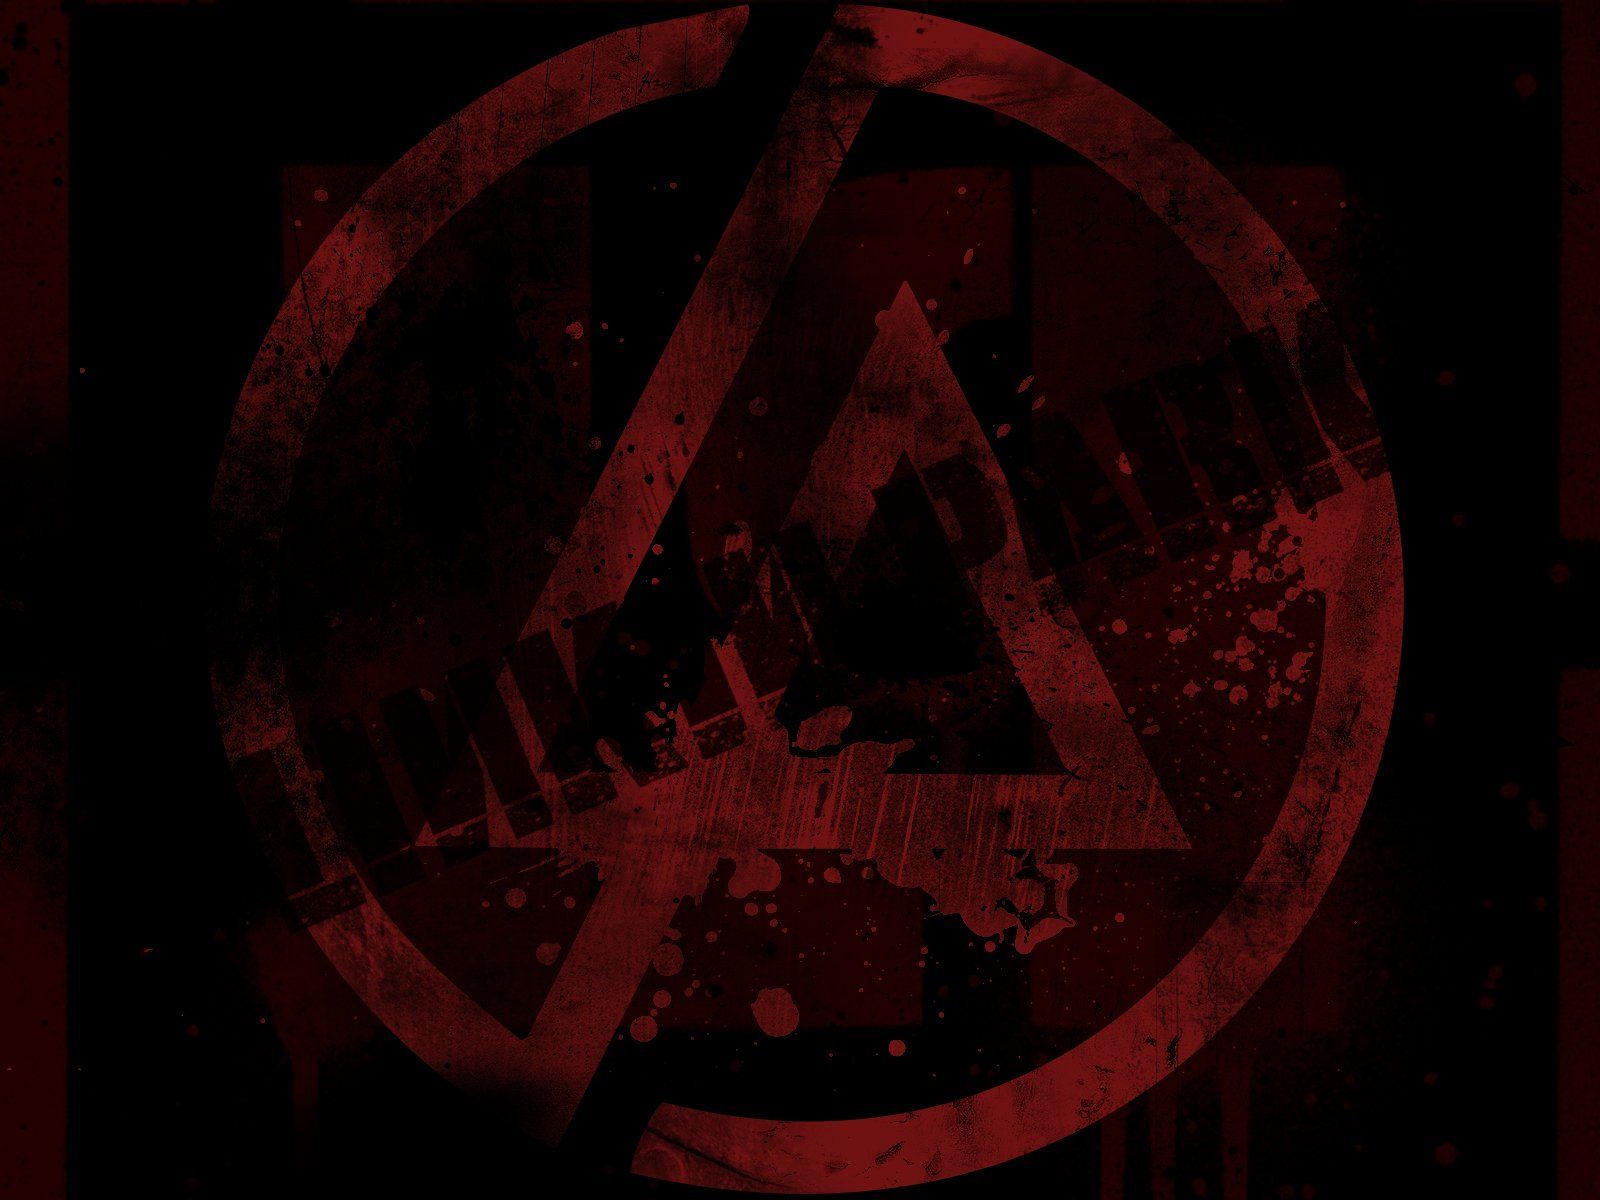 Music Linkin Park wallpaper | 1600x1200 | 242966 | WallpaperUP